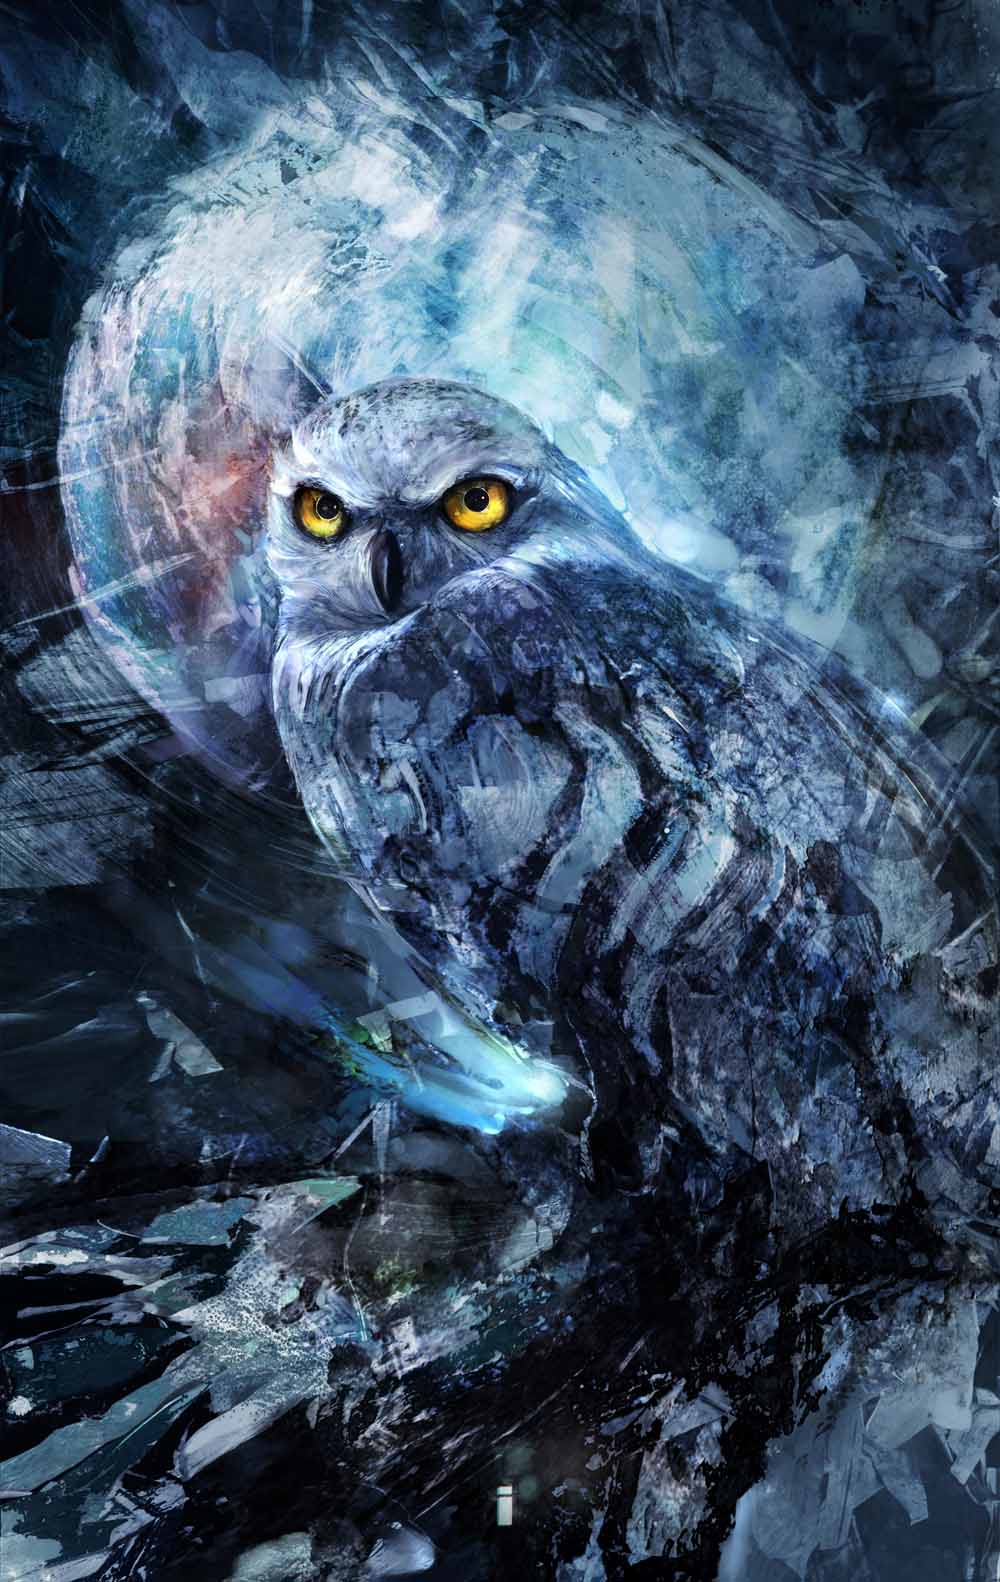 knight Owl by iVANTAO on DeviantArt